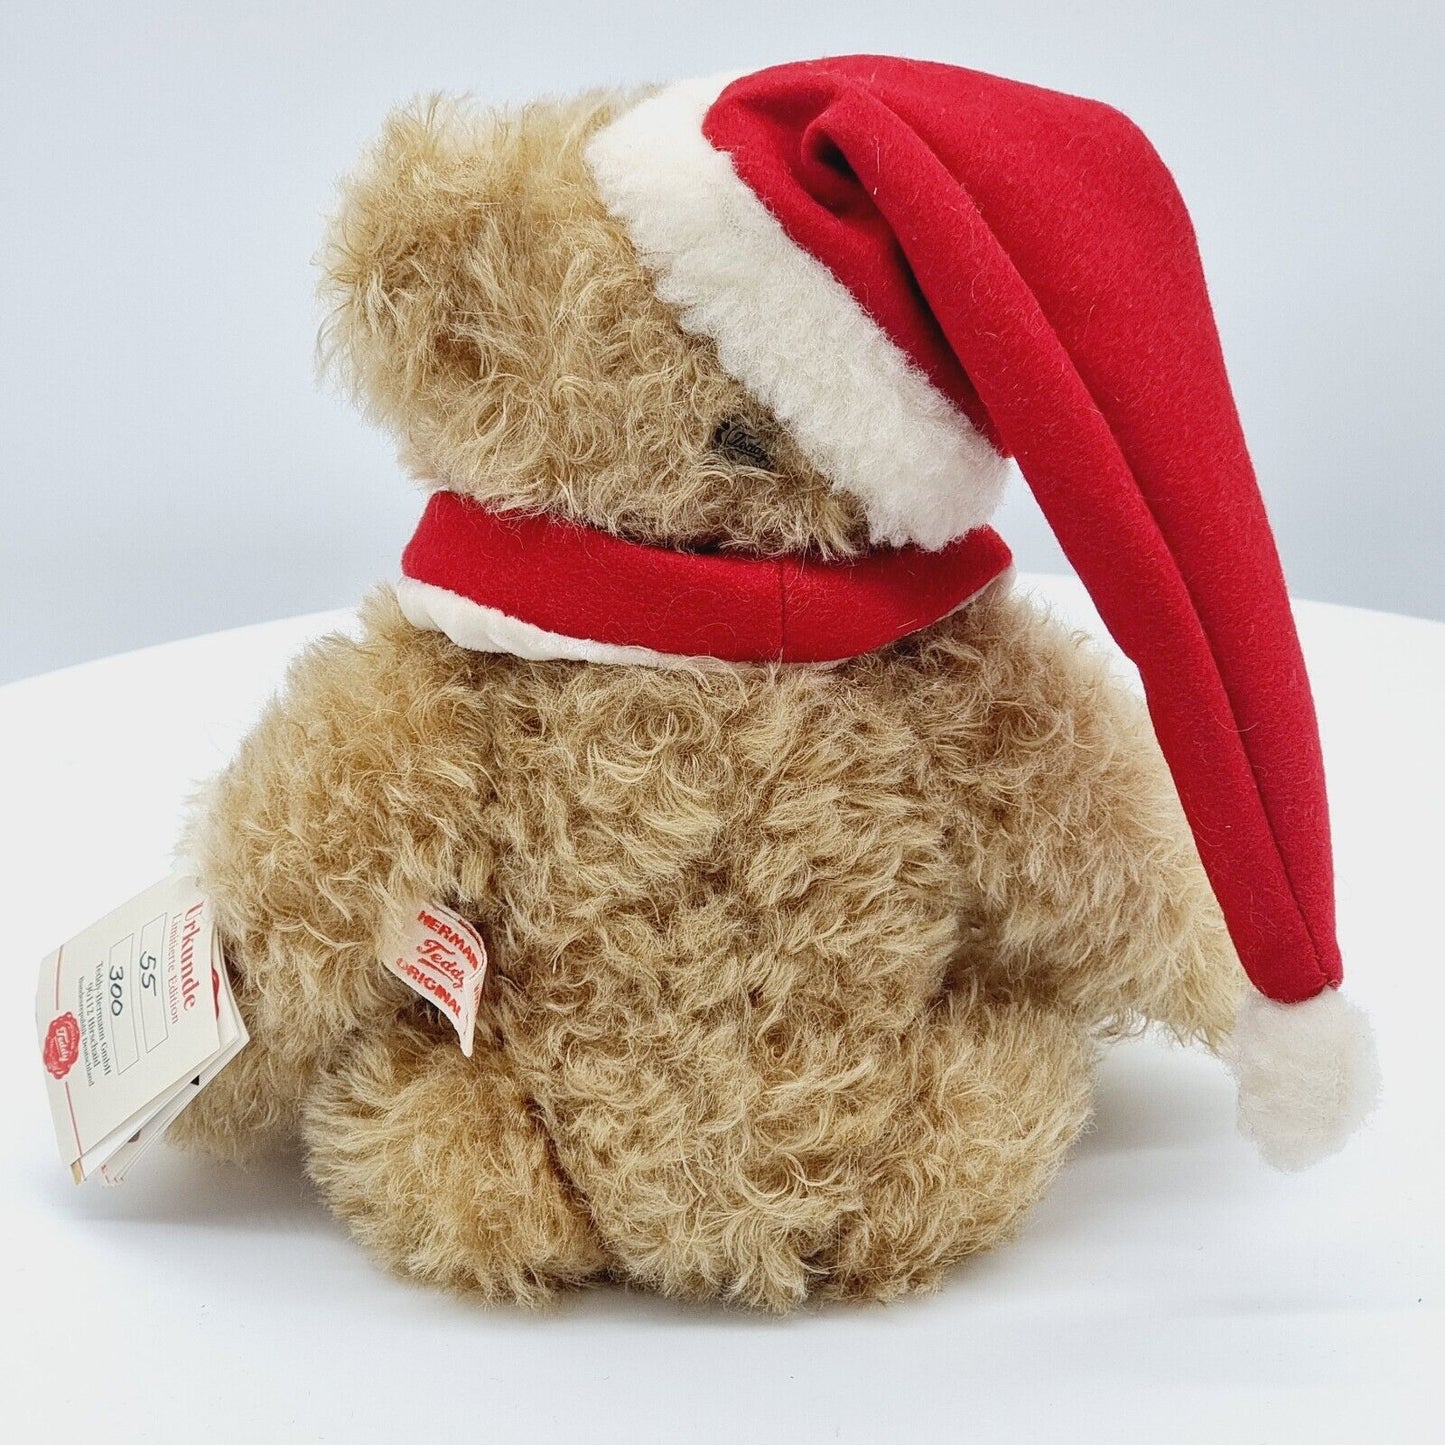 Teddy-Hermann Teddybär Weihnachtsmann 30 cm limitiert auf 300 Stück